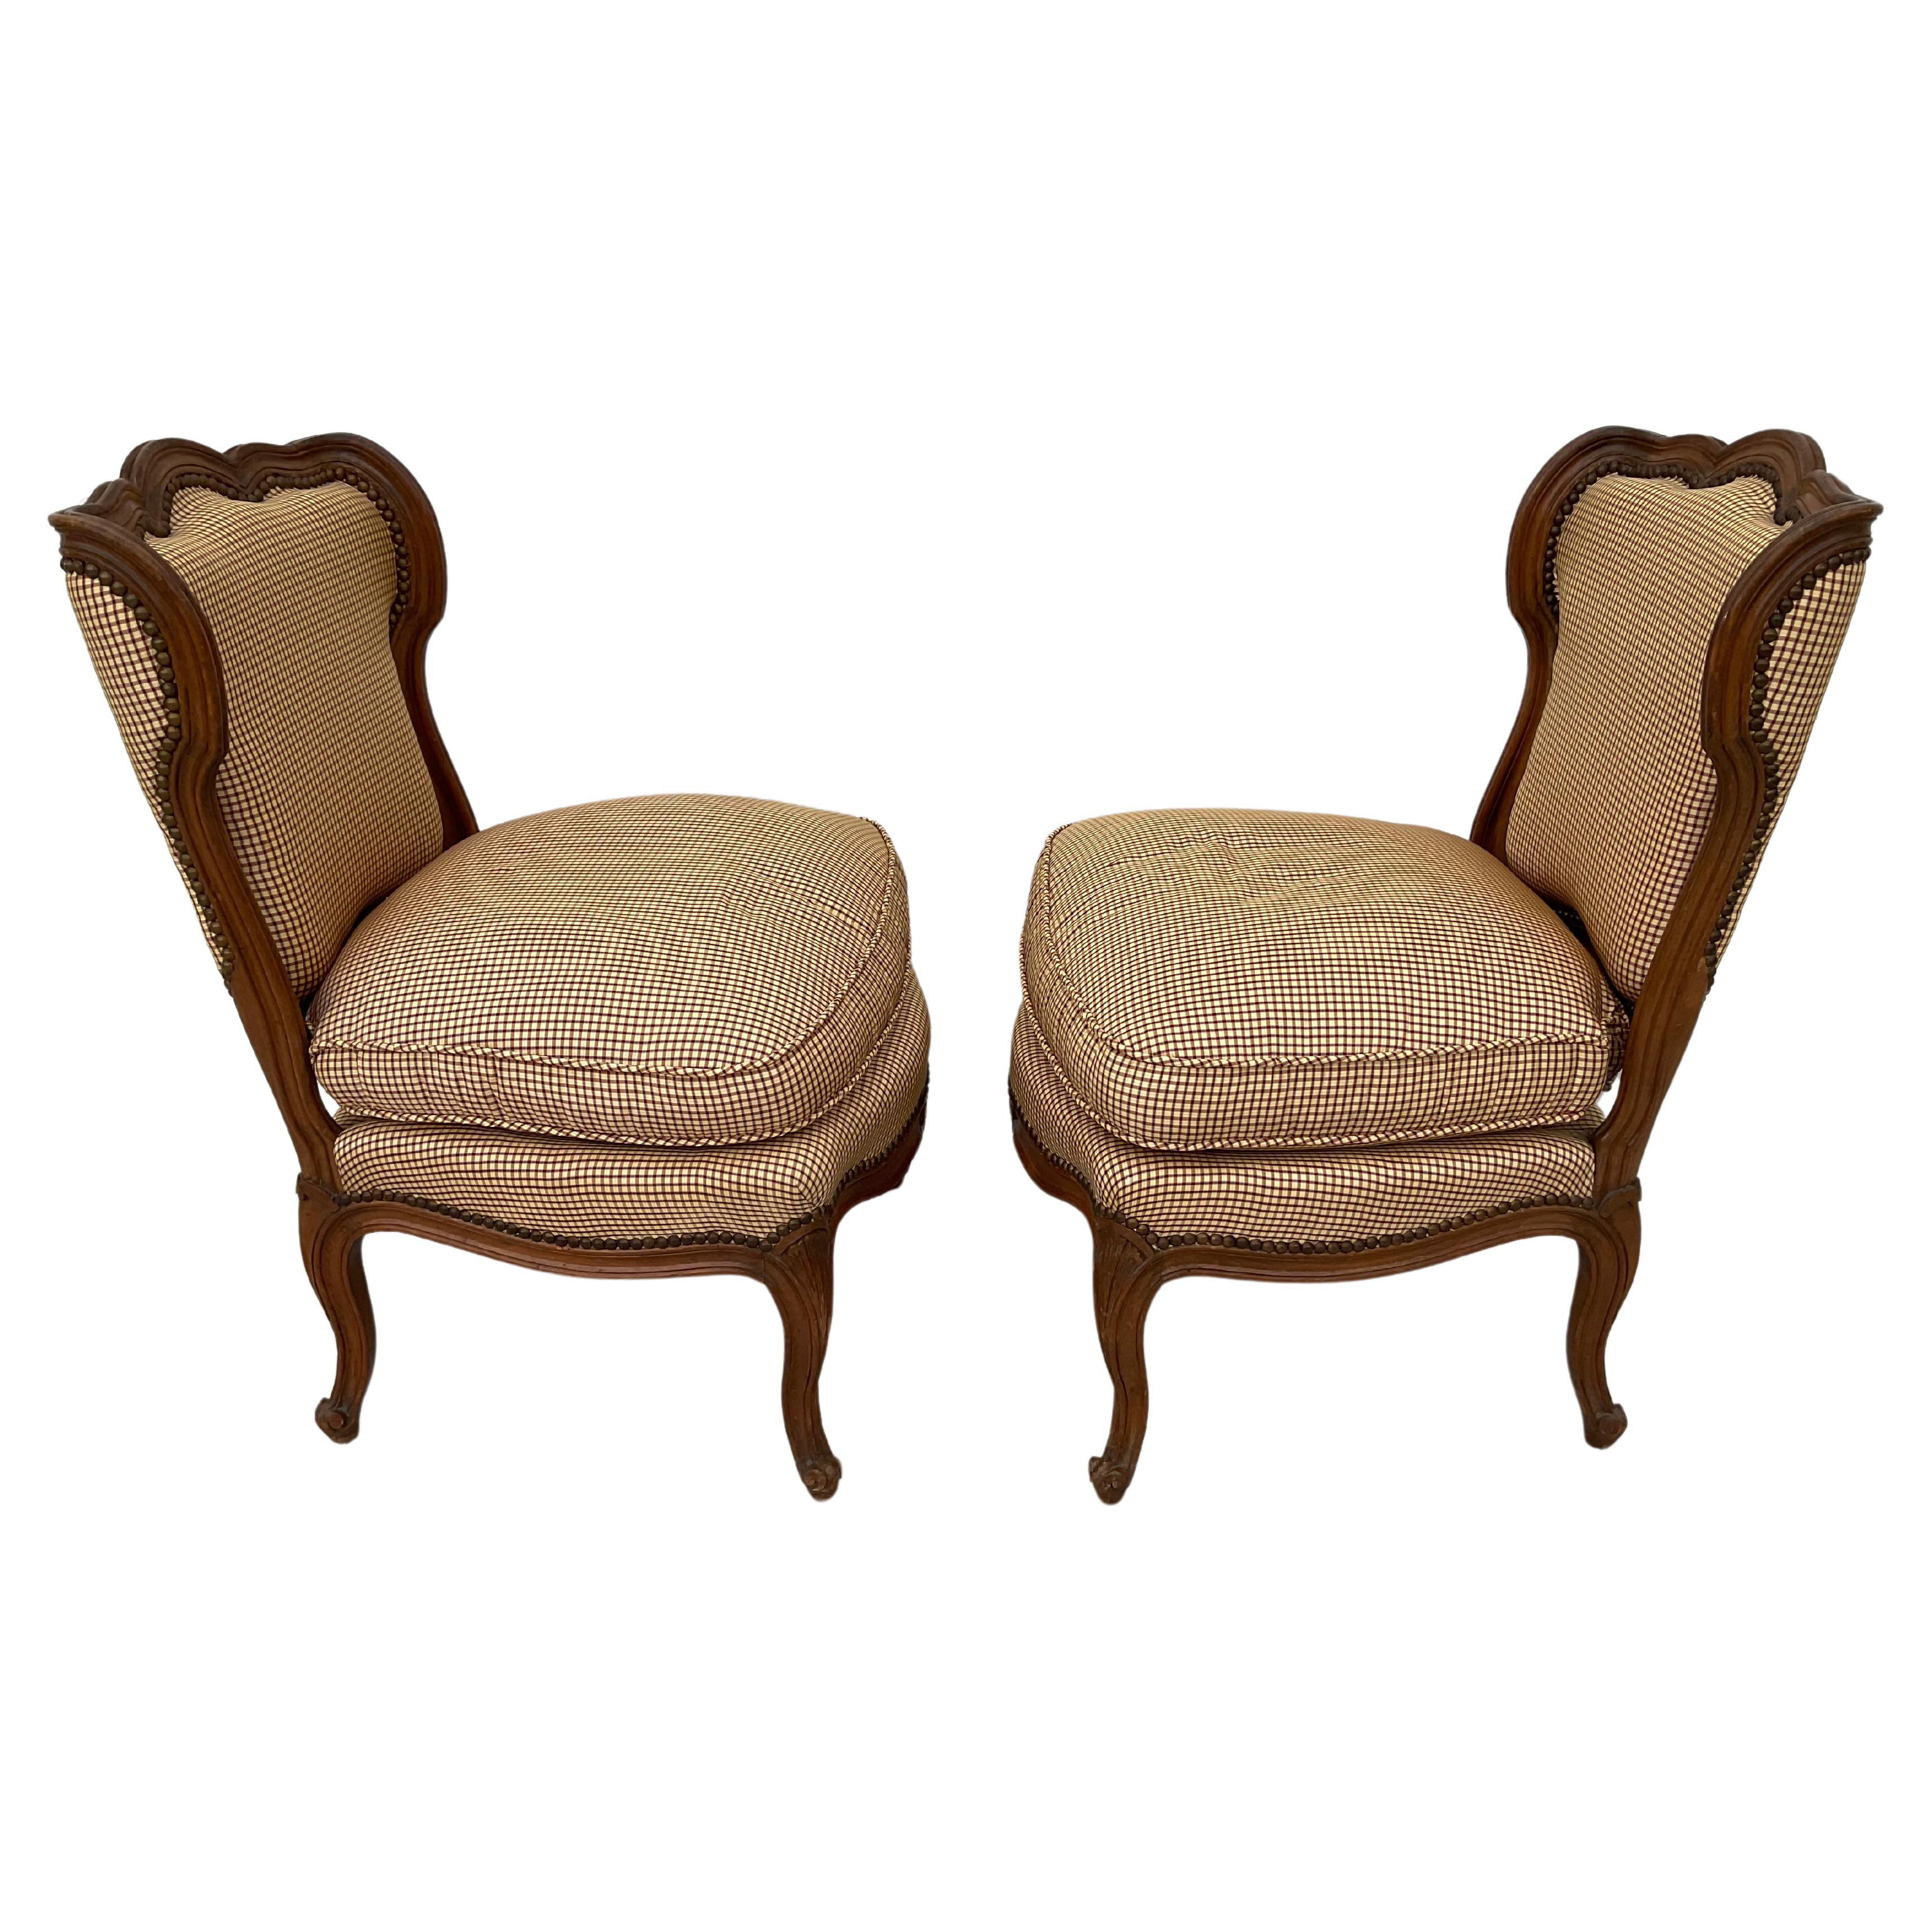 Paire de fauteuils pantouflards de style français avec de larges assises confortables. Les chaises tapissées ont un dossier de belle forme et reposent sur des pieds cabriole à volutes. La sellerie est à petits carreaux marron et crème. Les chaises